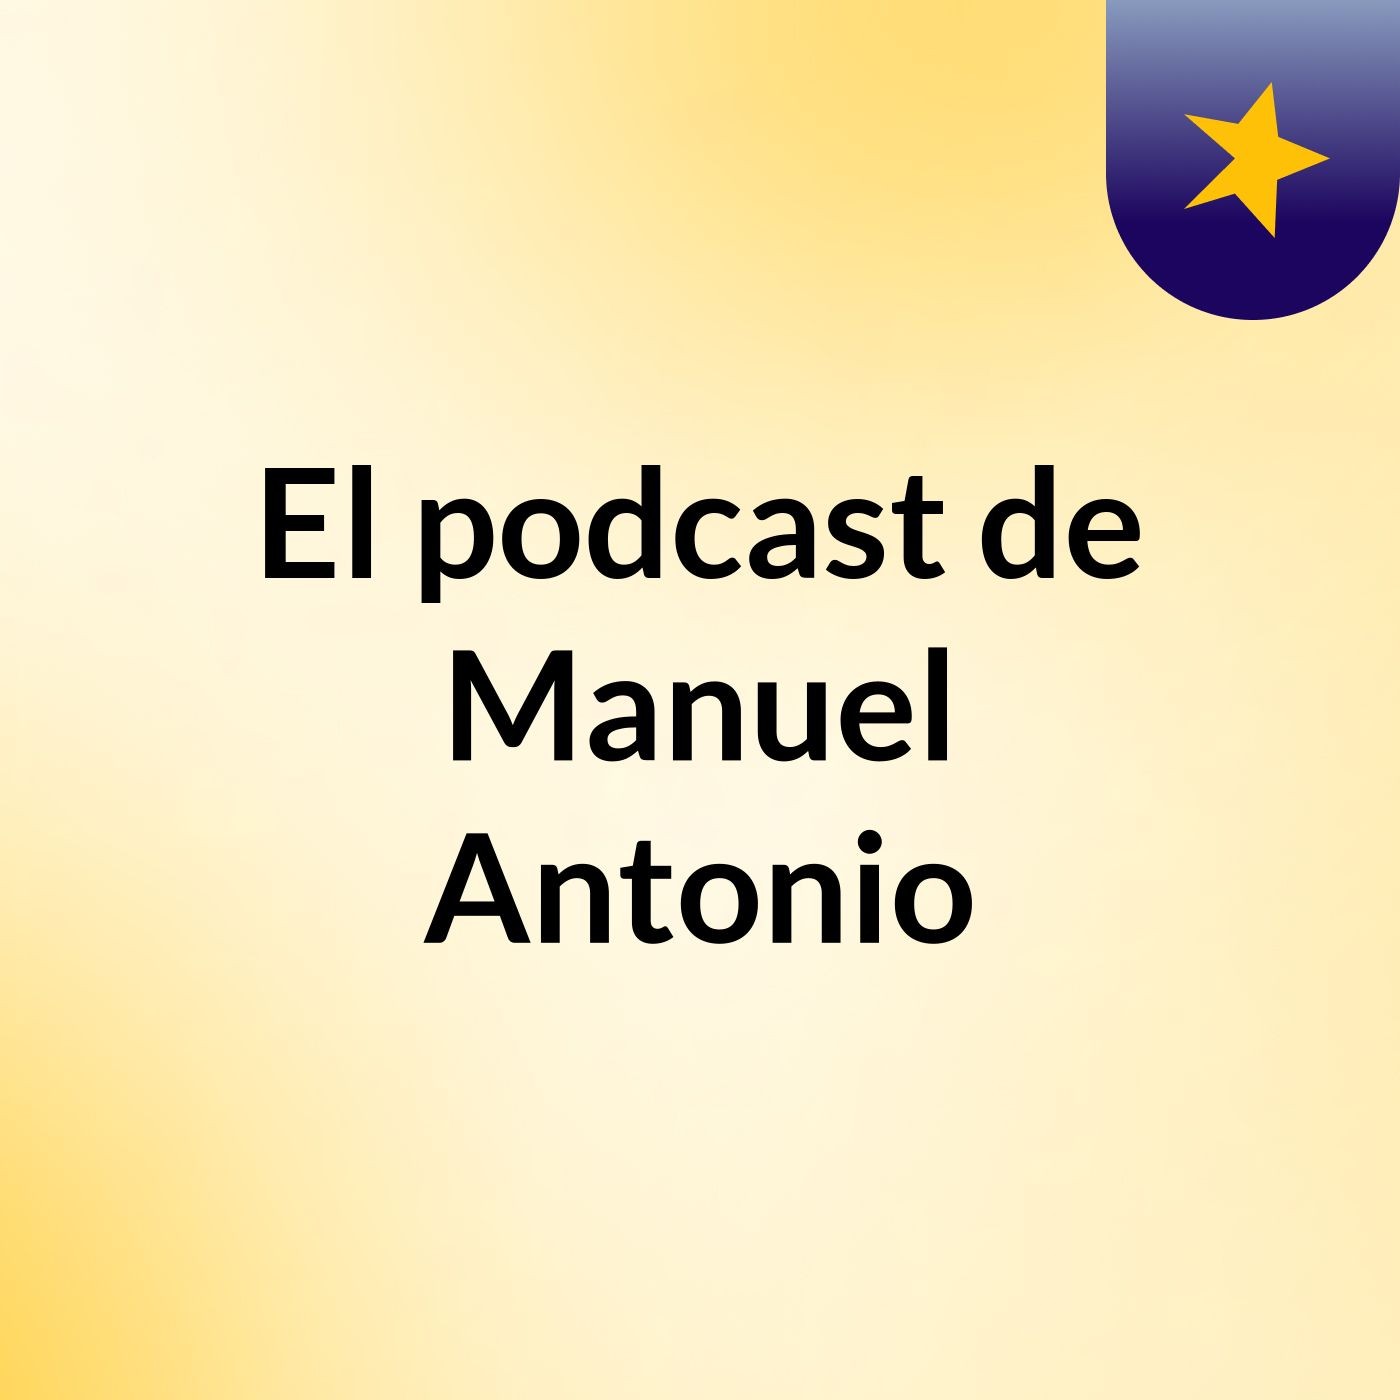 El podcast de Manuel Antonio